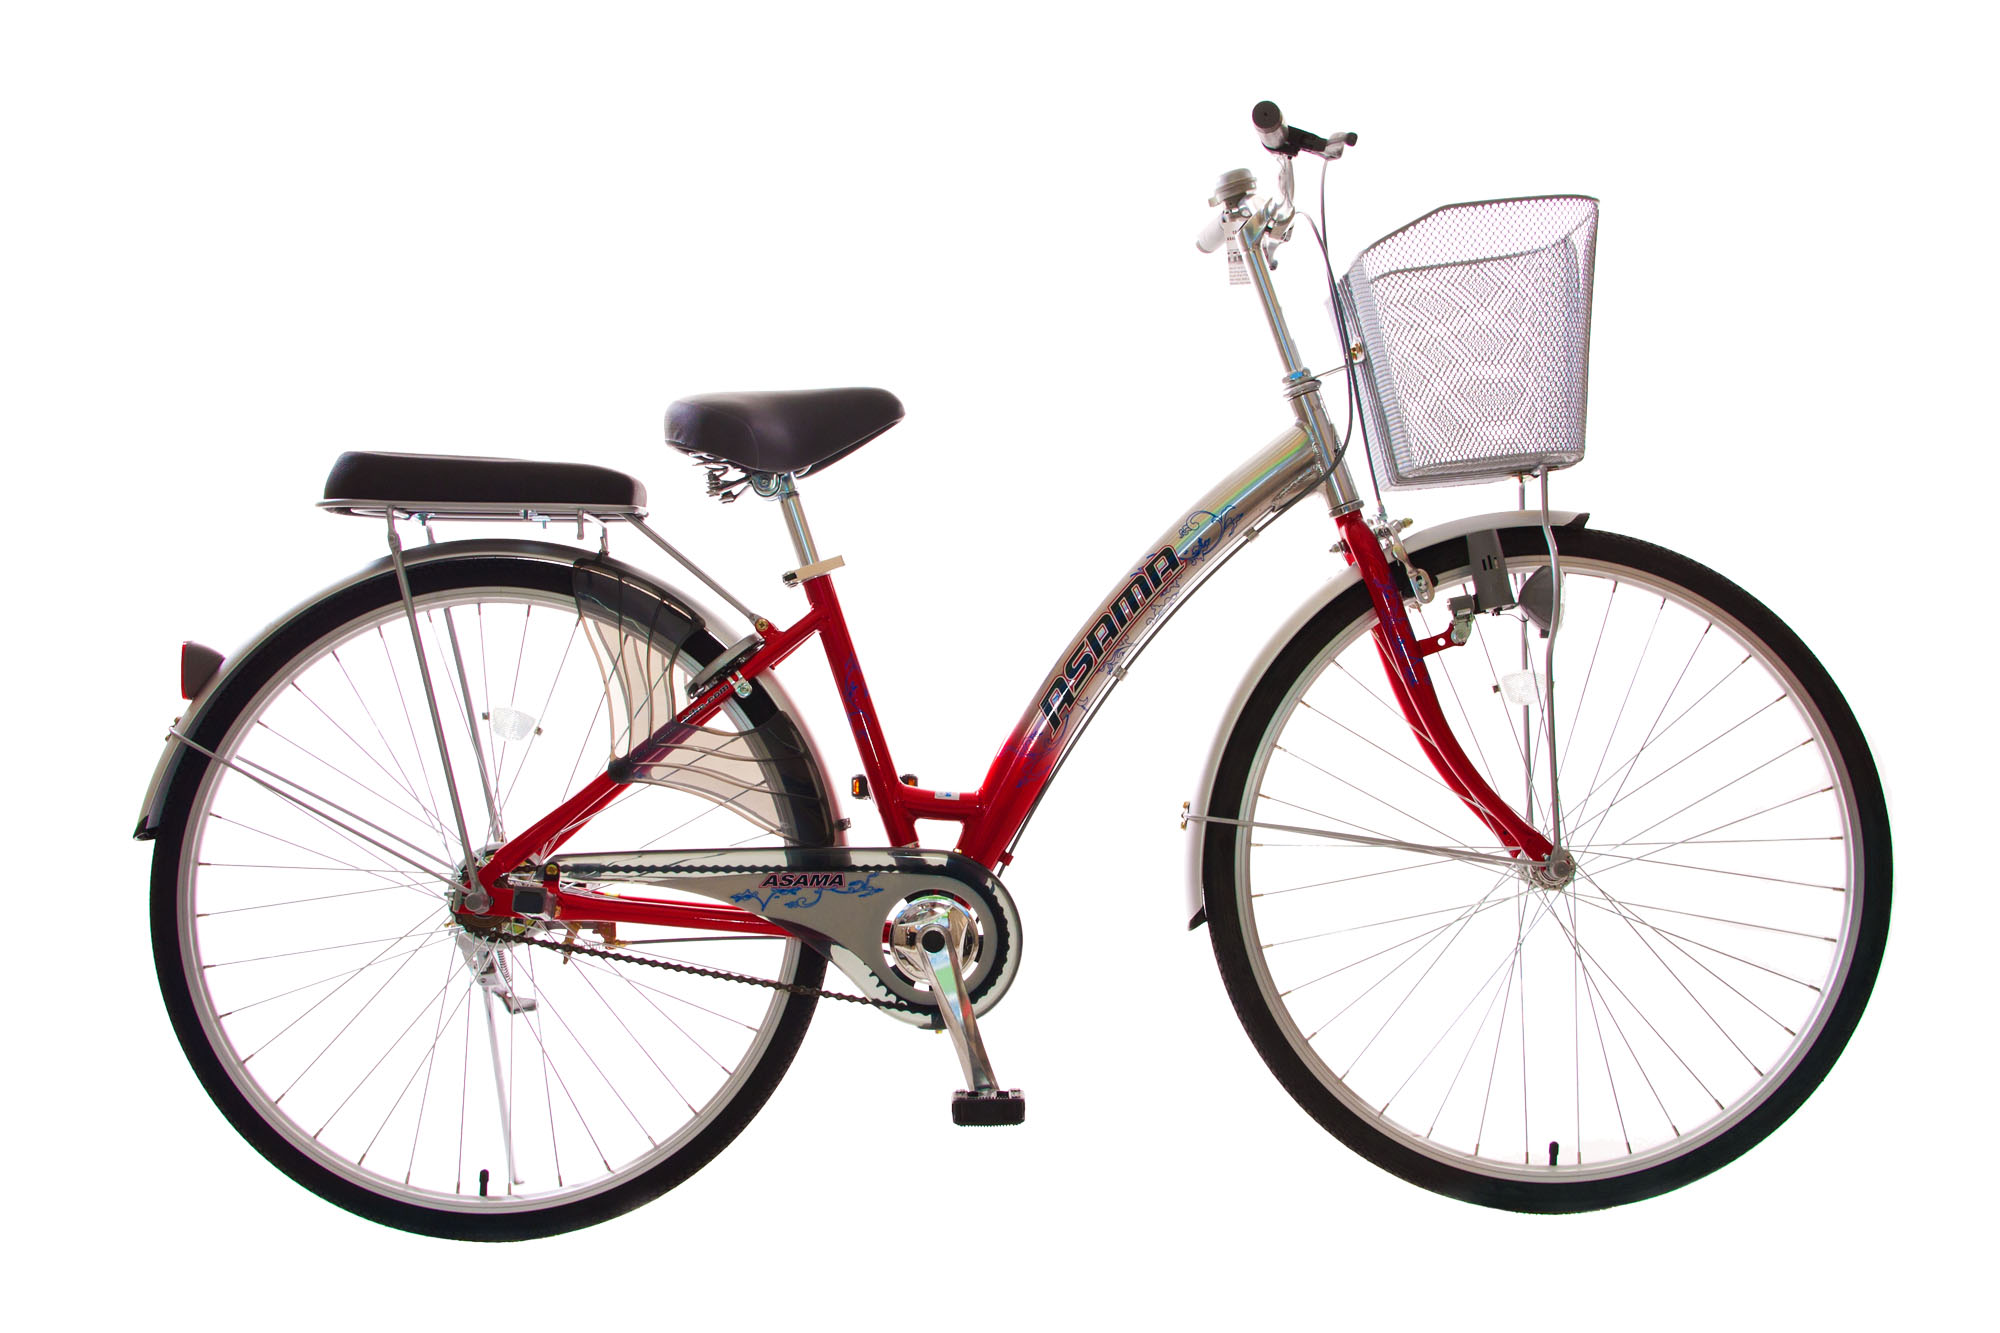 Xe đạp Asama là món quà tuyệt vời cho những ai yêu thích vận động. Với thiết kế sang trọng và tính năng vượt trội, chiếc xe đạp này sẽ khiến bạn cảm thấy sẽ rất thoải mái khi lướt đường.